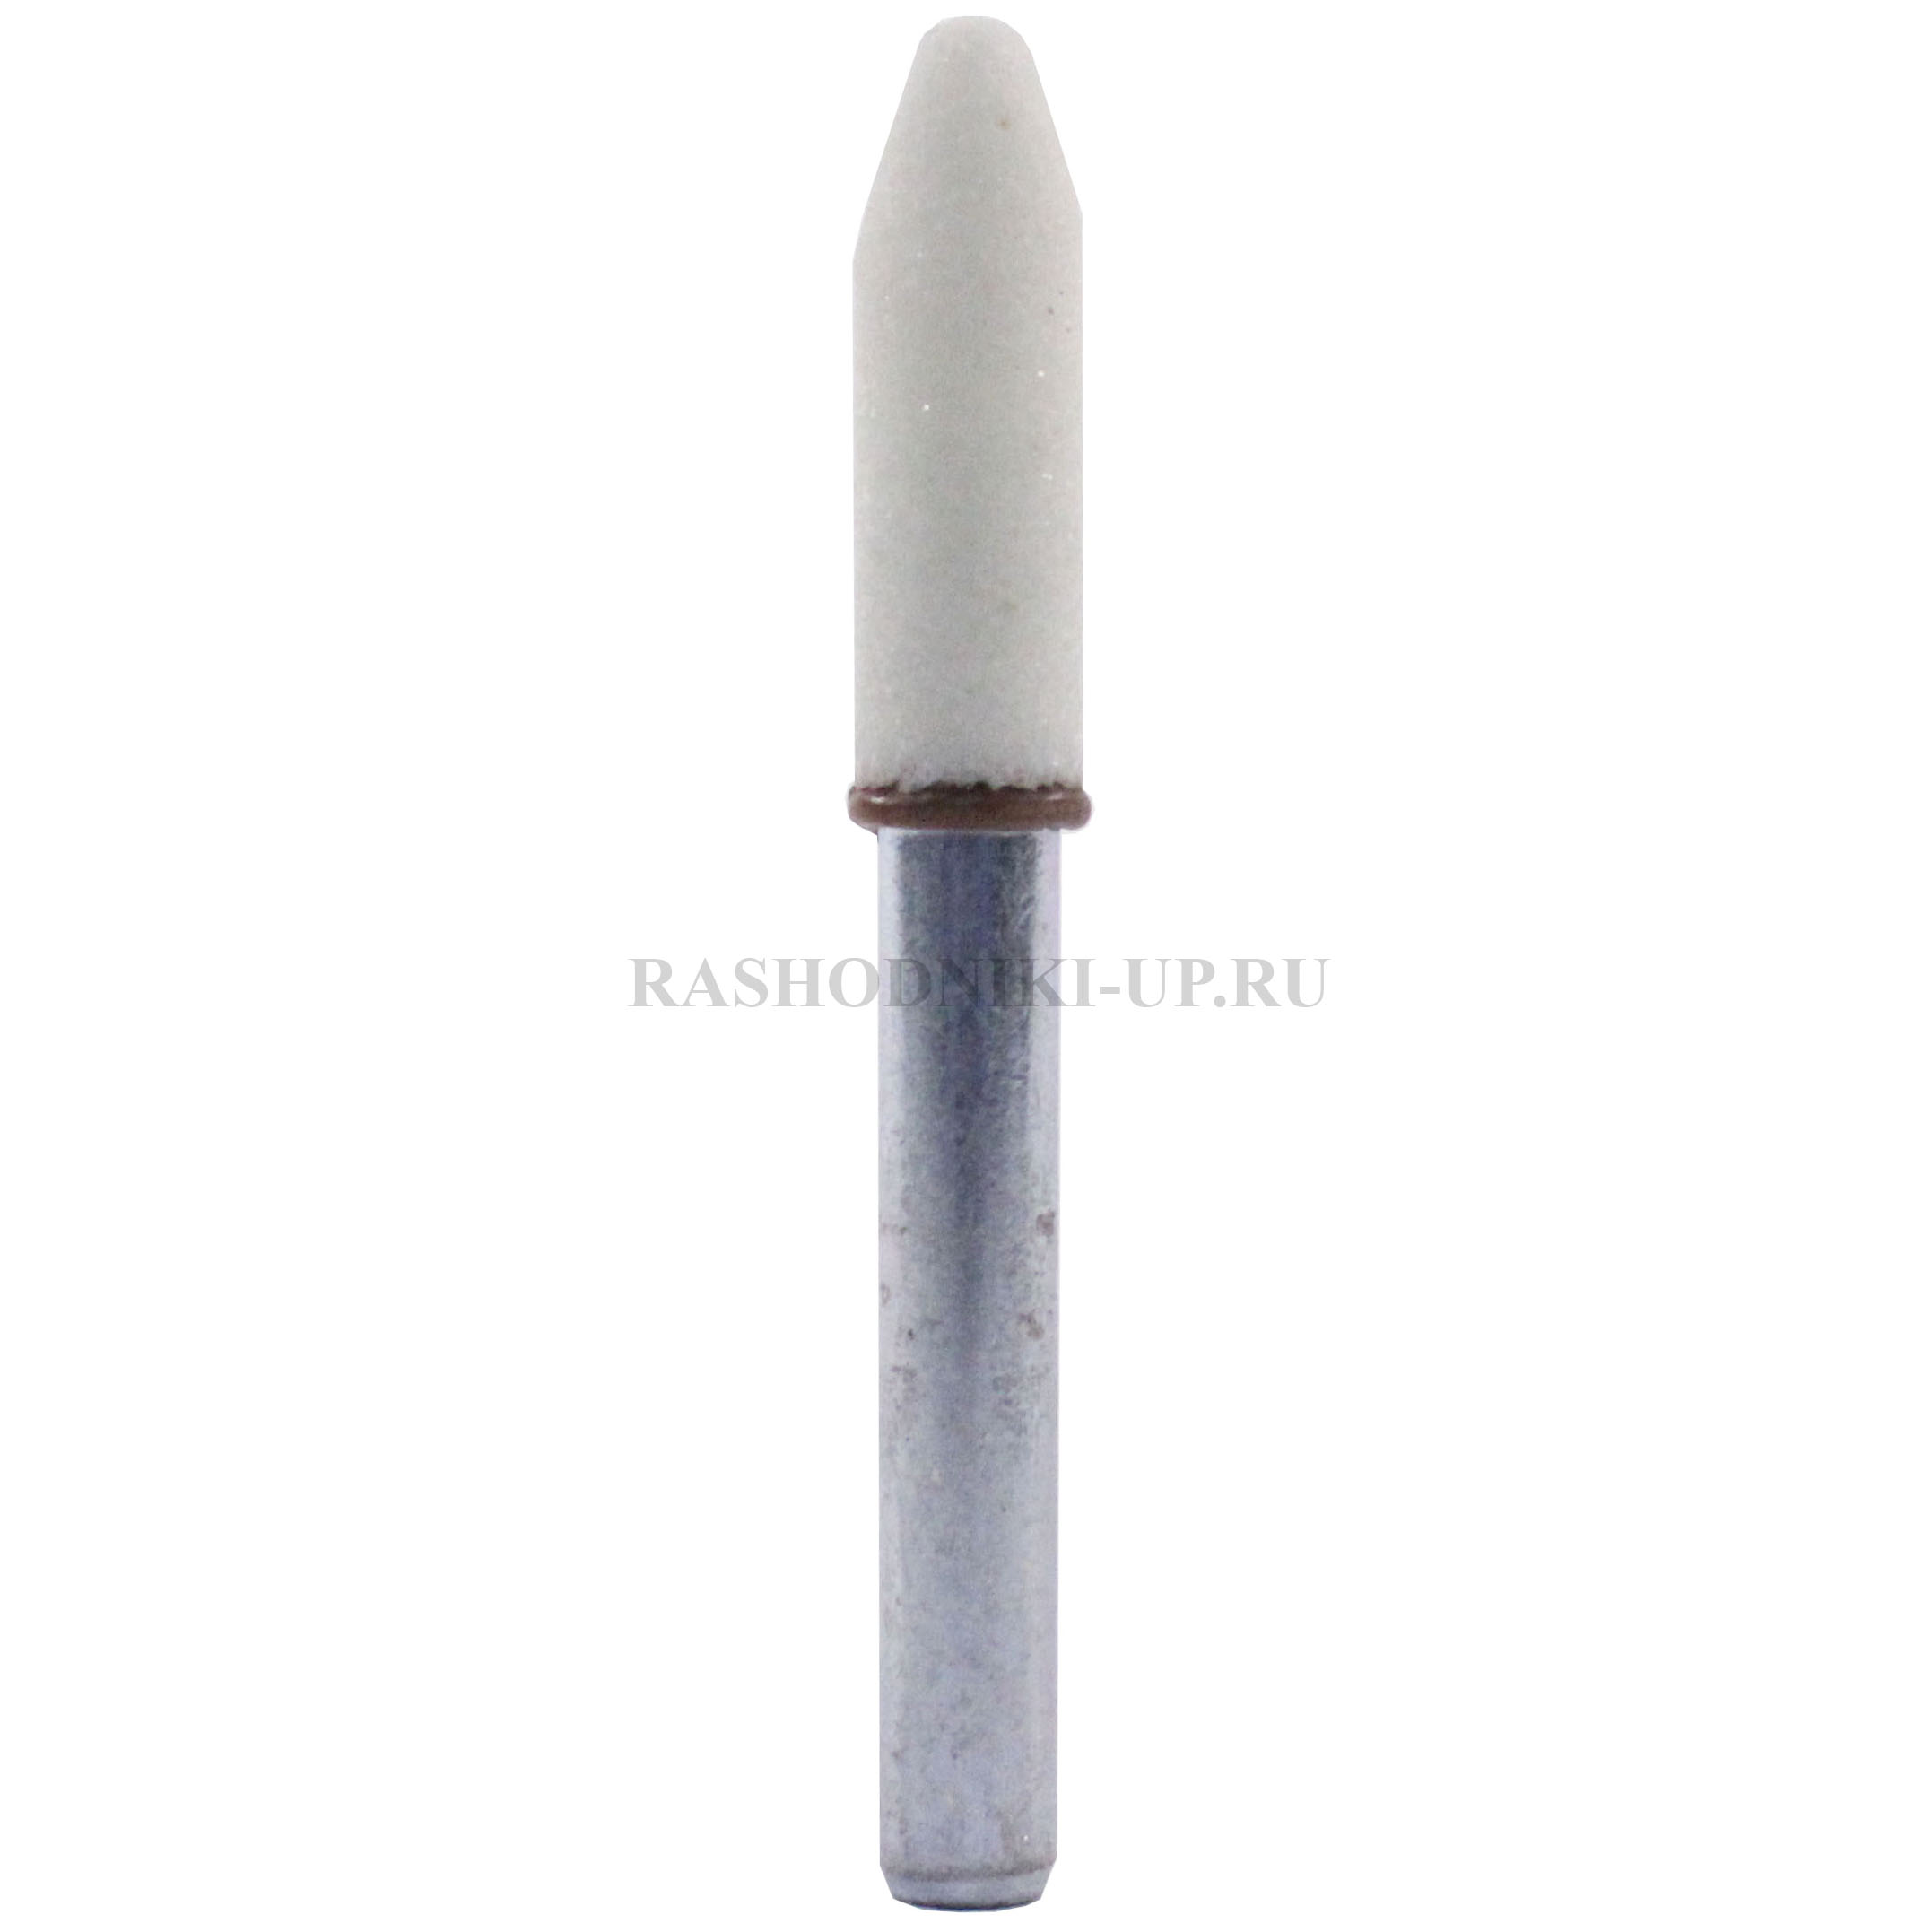 BJ 710 W Абразив-карандаш (камень) диаметр 8, длина 25